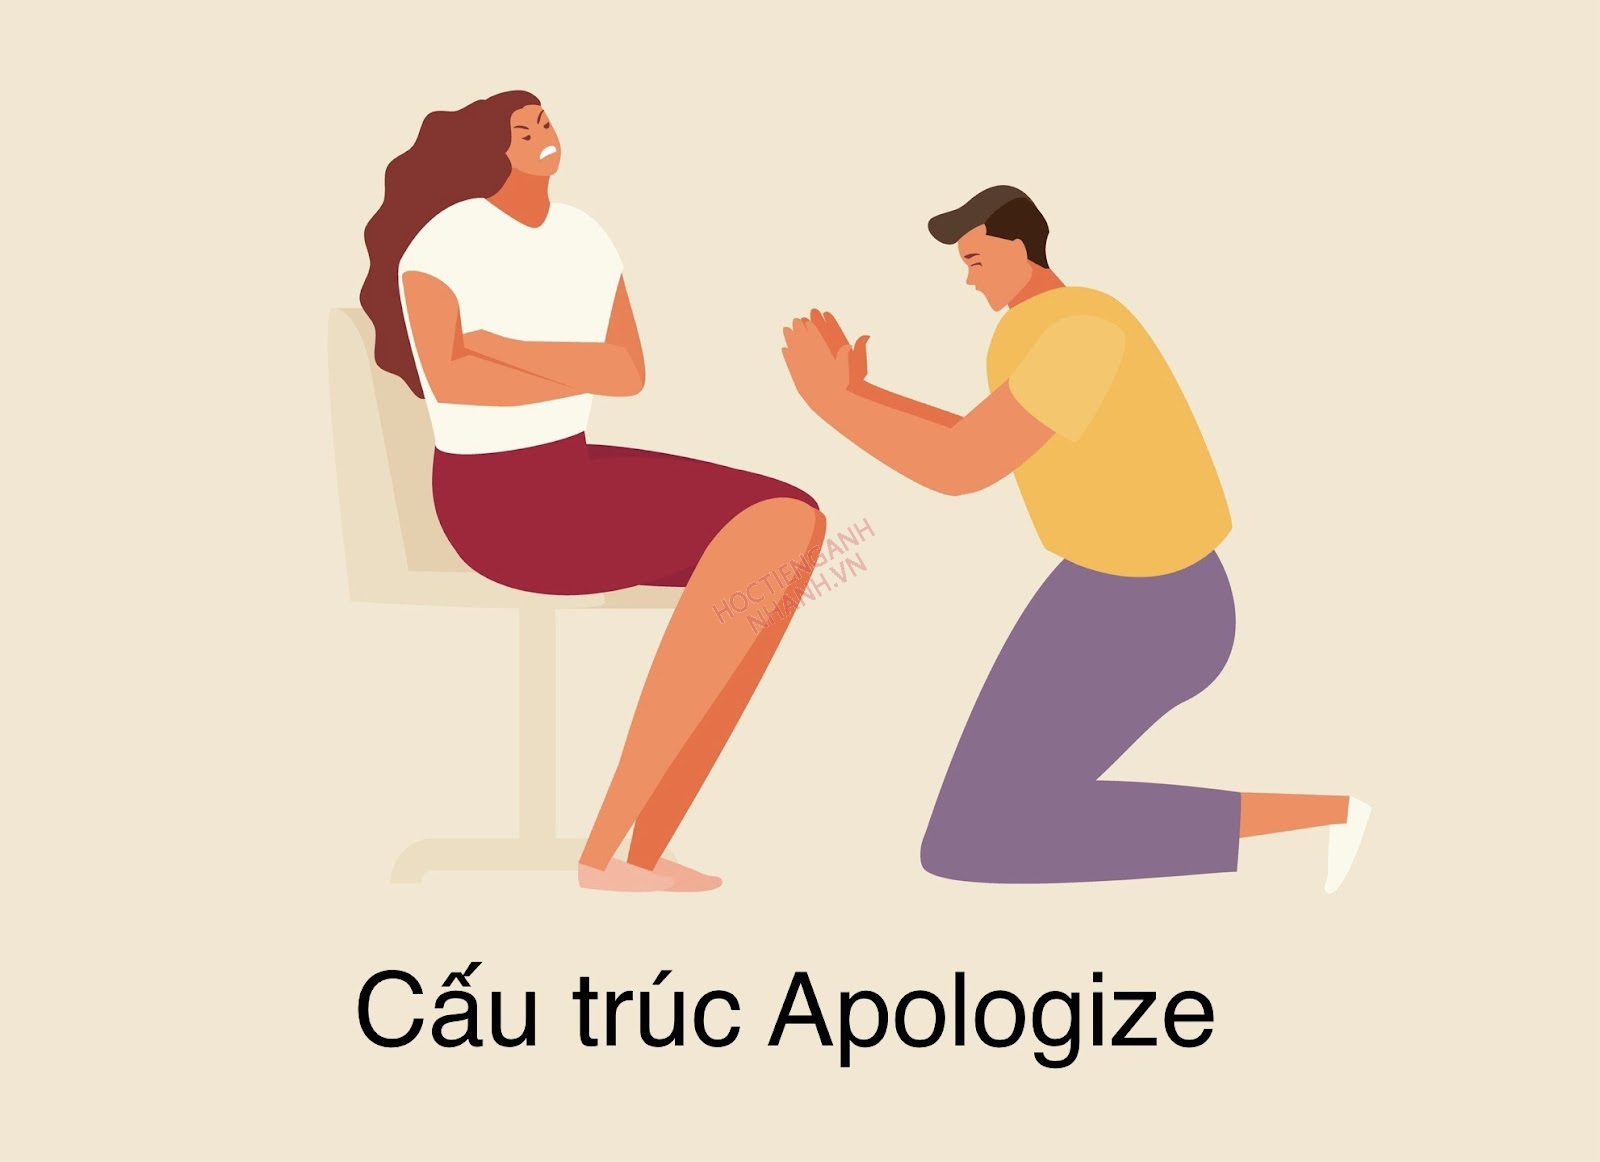 Apologize là một cấu trúc xin lỗi thông dụng trong Tiếng Anh